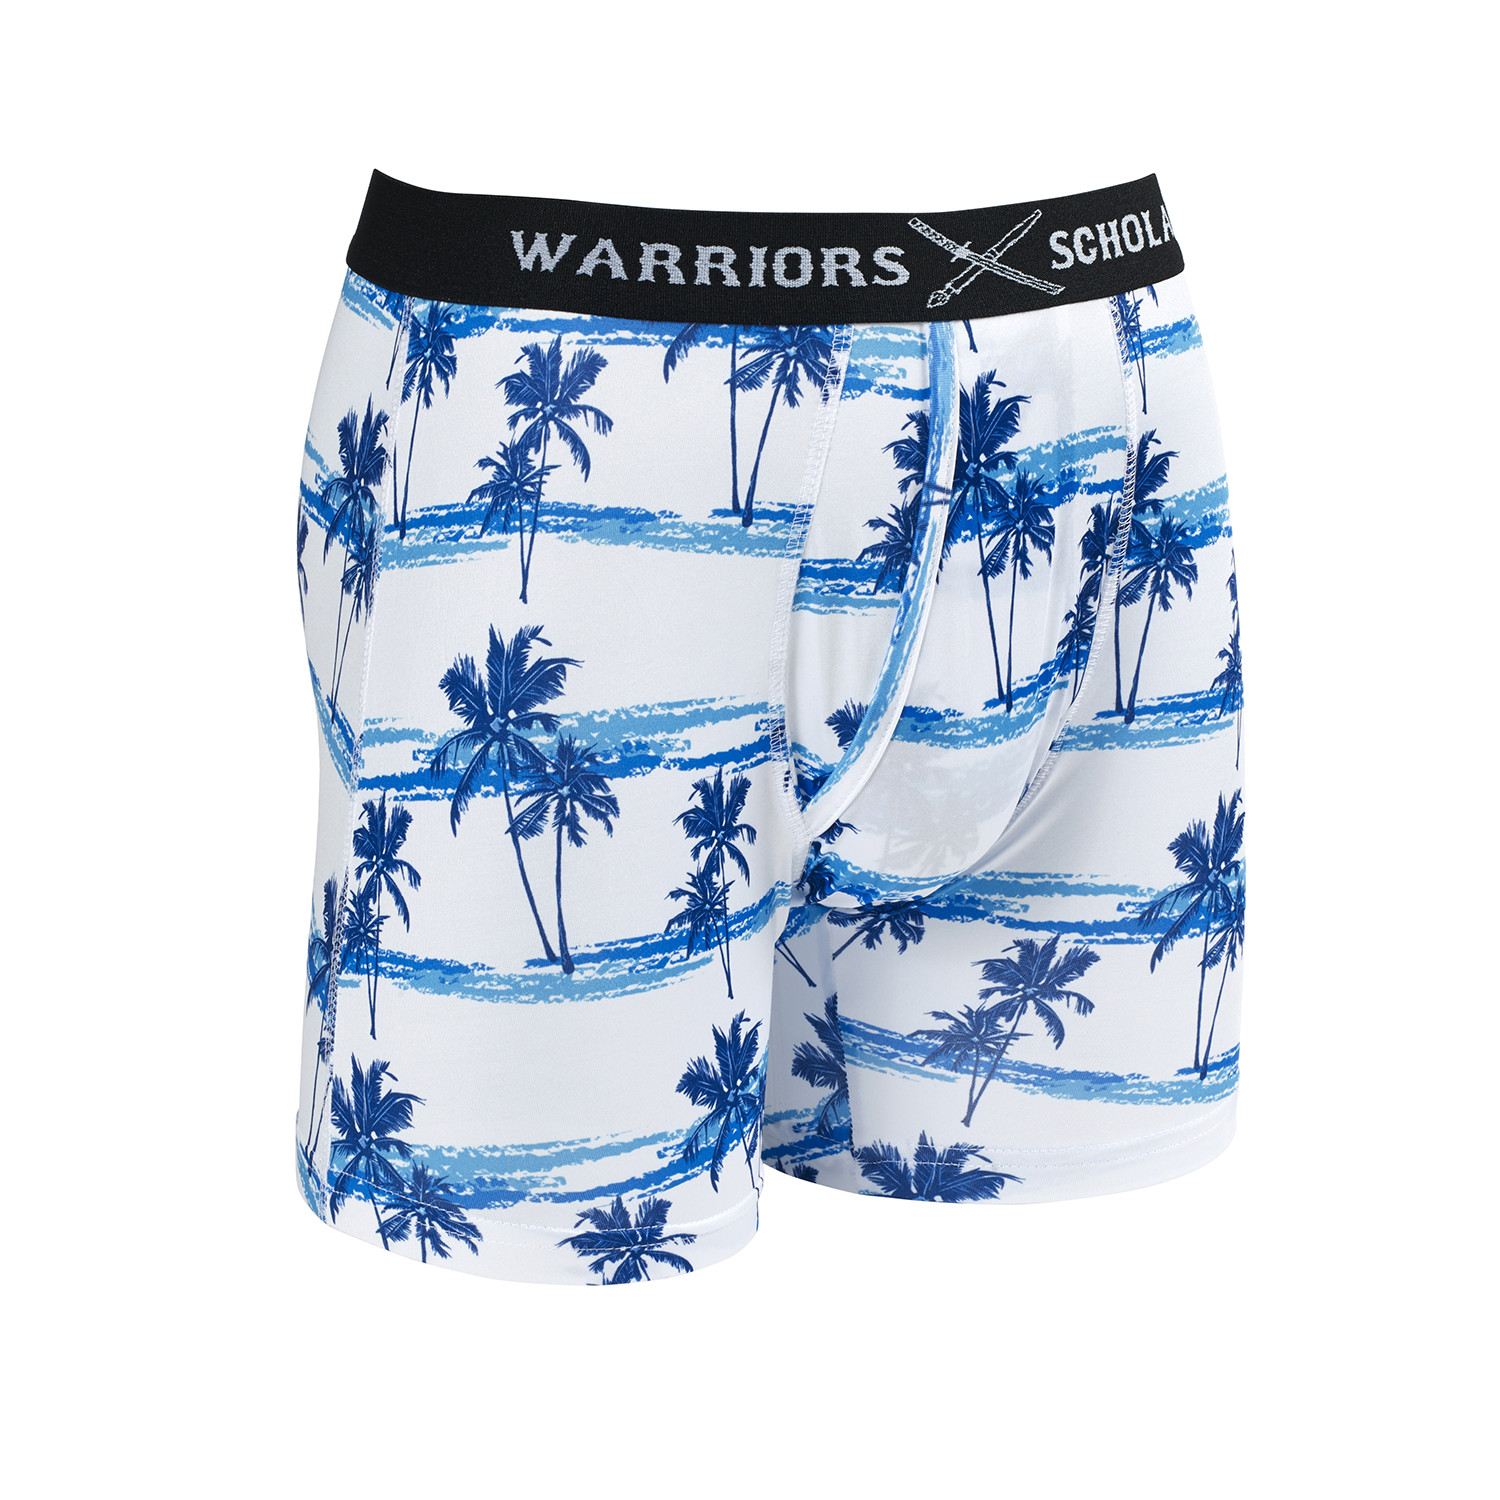 Warriors & Scholars - Boxer Brief 2 Pack - WarriorFit Moisture Wicking  Fabric